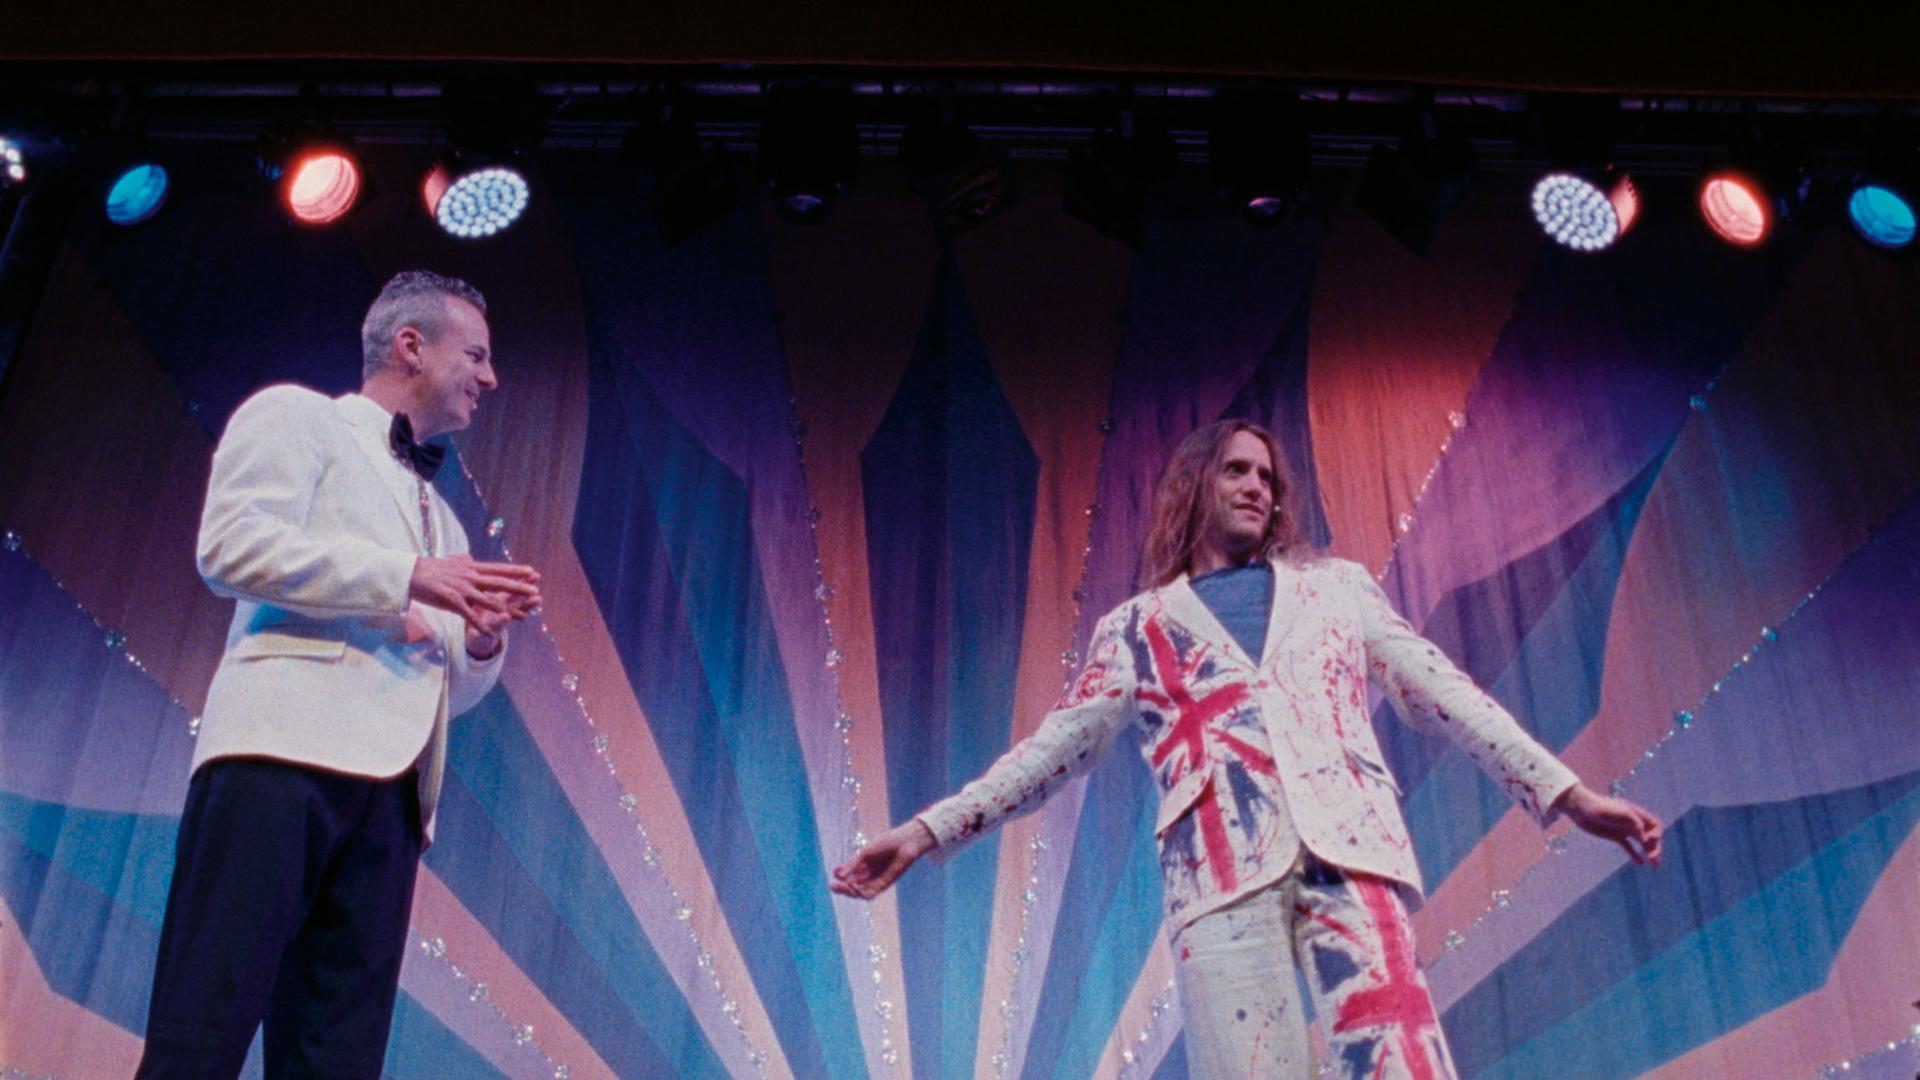 Aus der Doku "Seaside Special": Zwei Personen stehen auf einer Bühne. Eine Person trägt ein Glitzerkostüm mit der britischen Flagge darauf. 